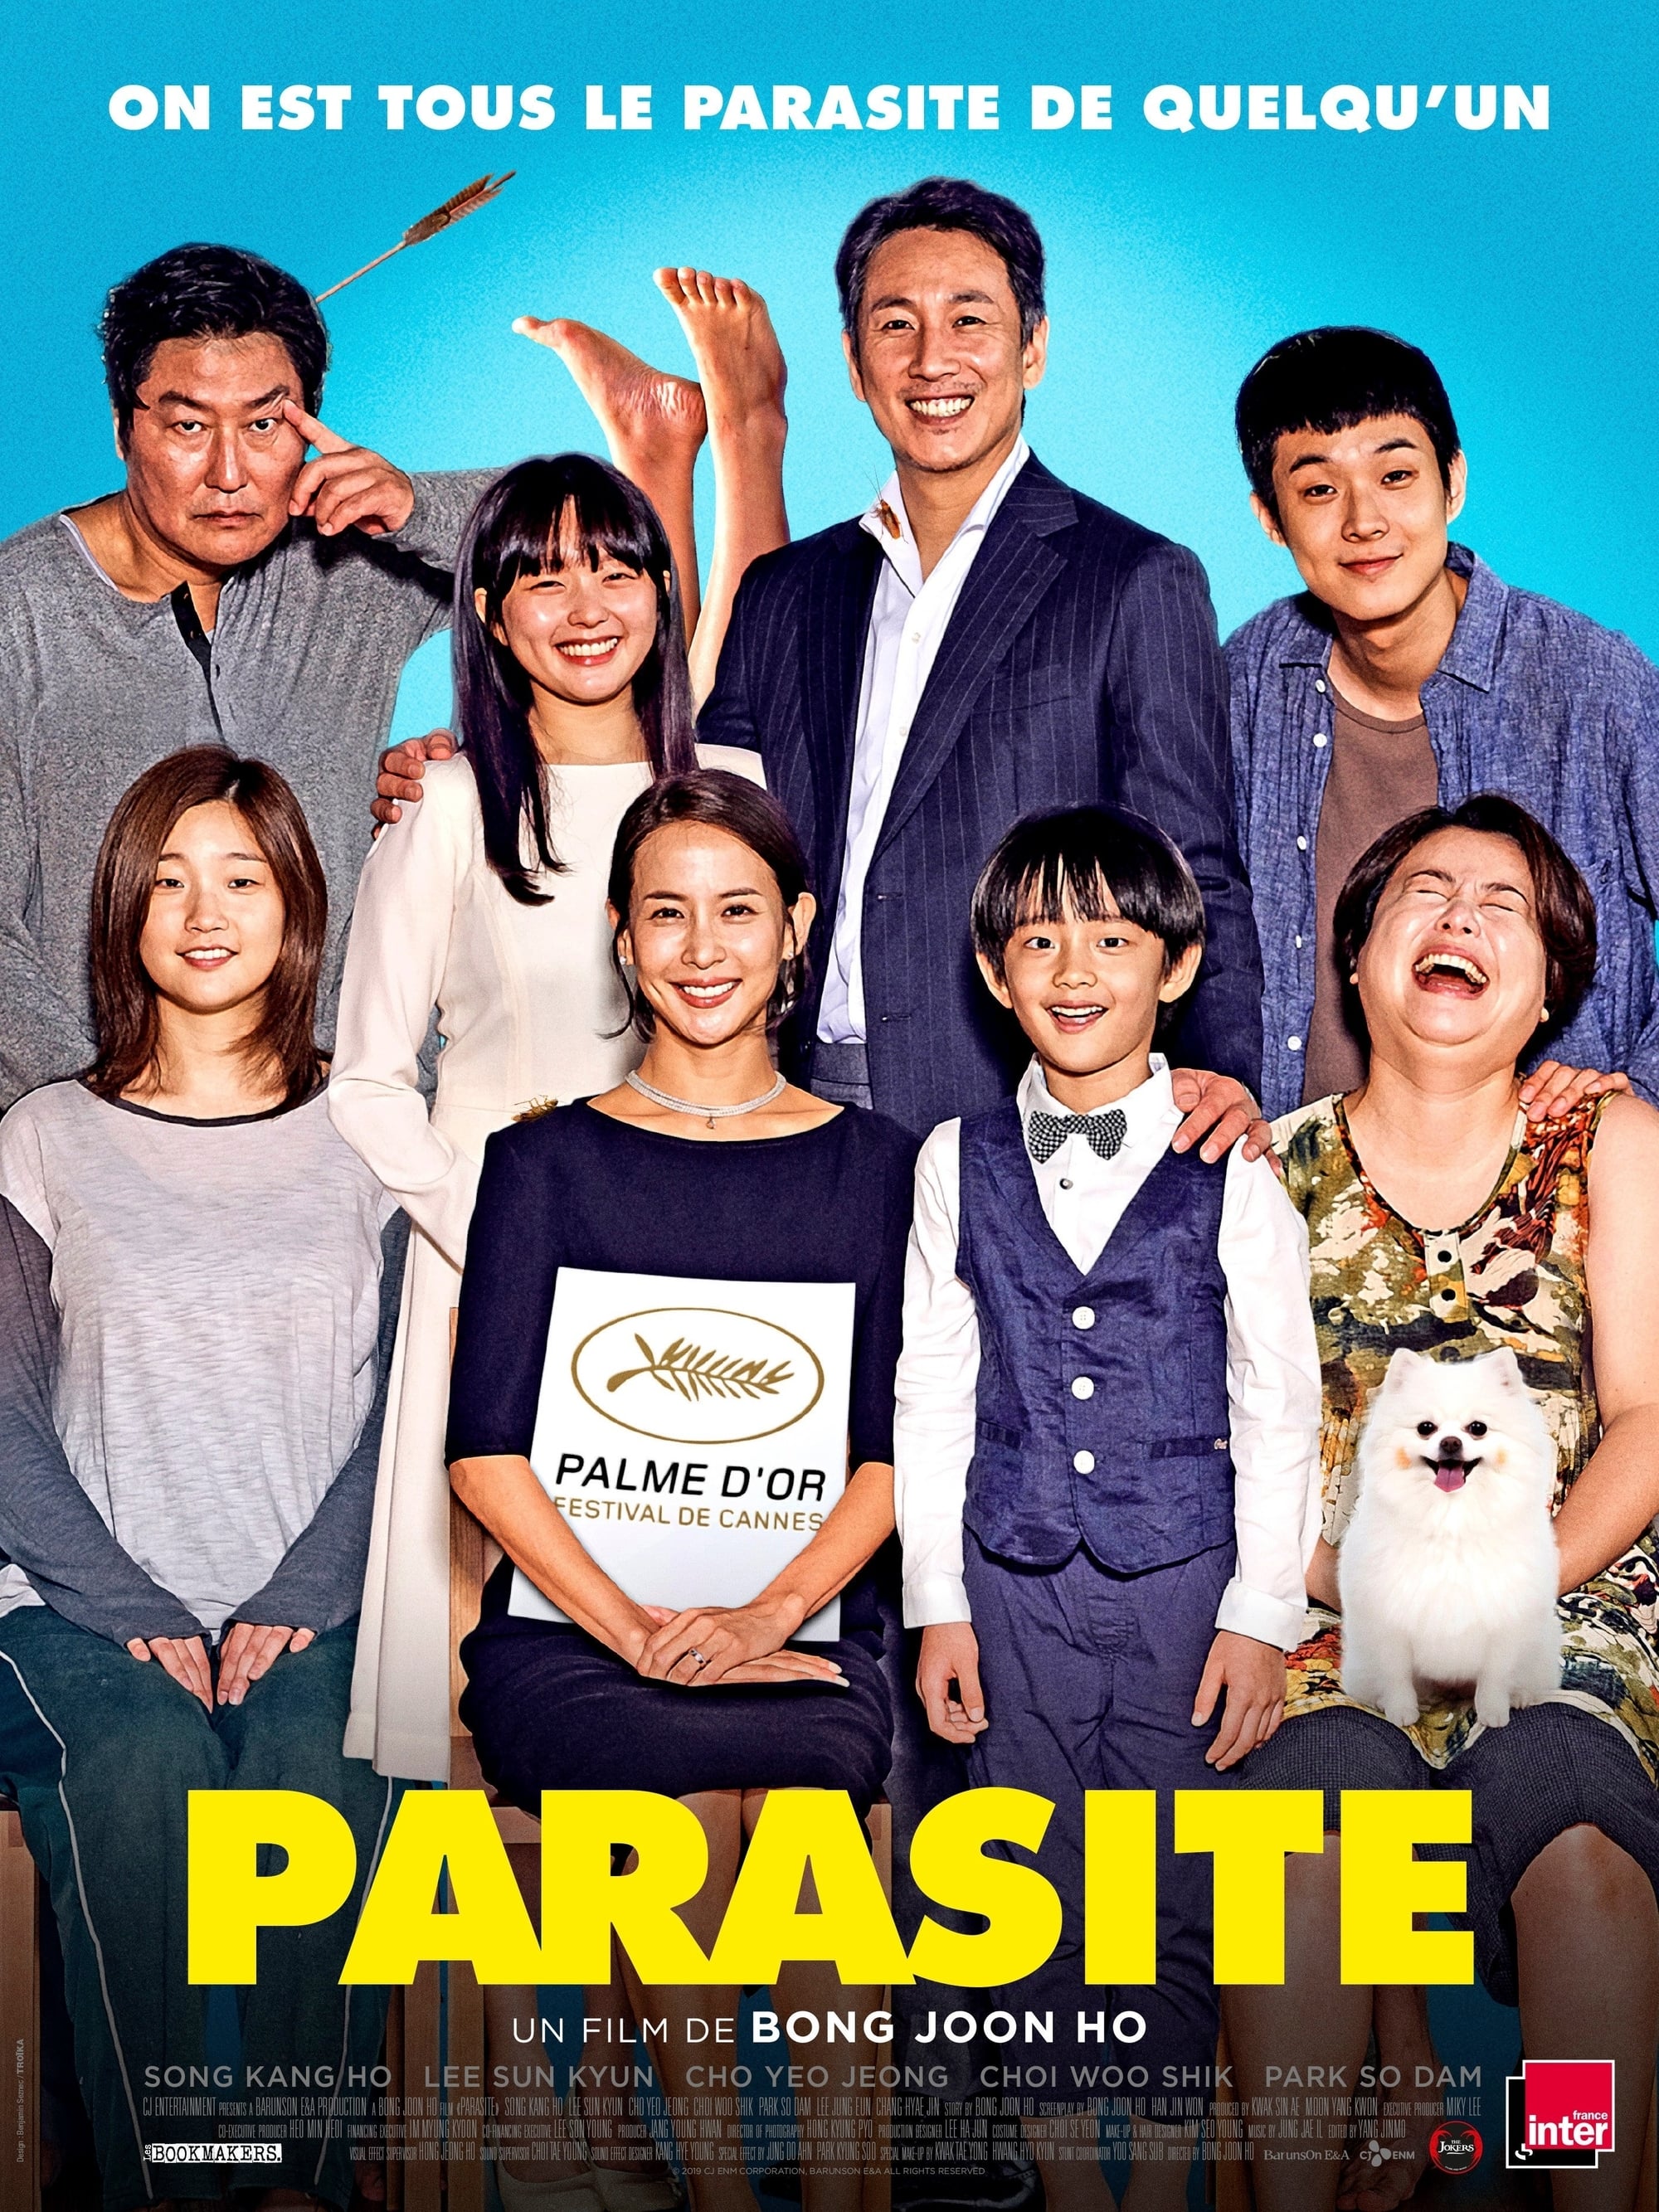 Watch Parasite (2019) Full Movie Online Free - Watch ...